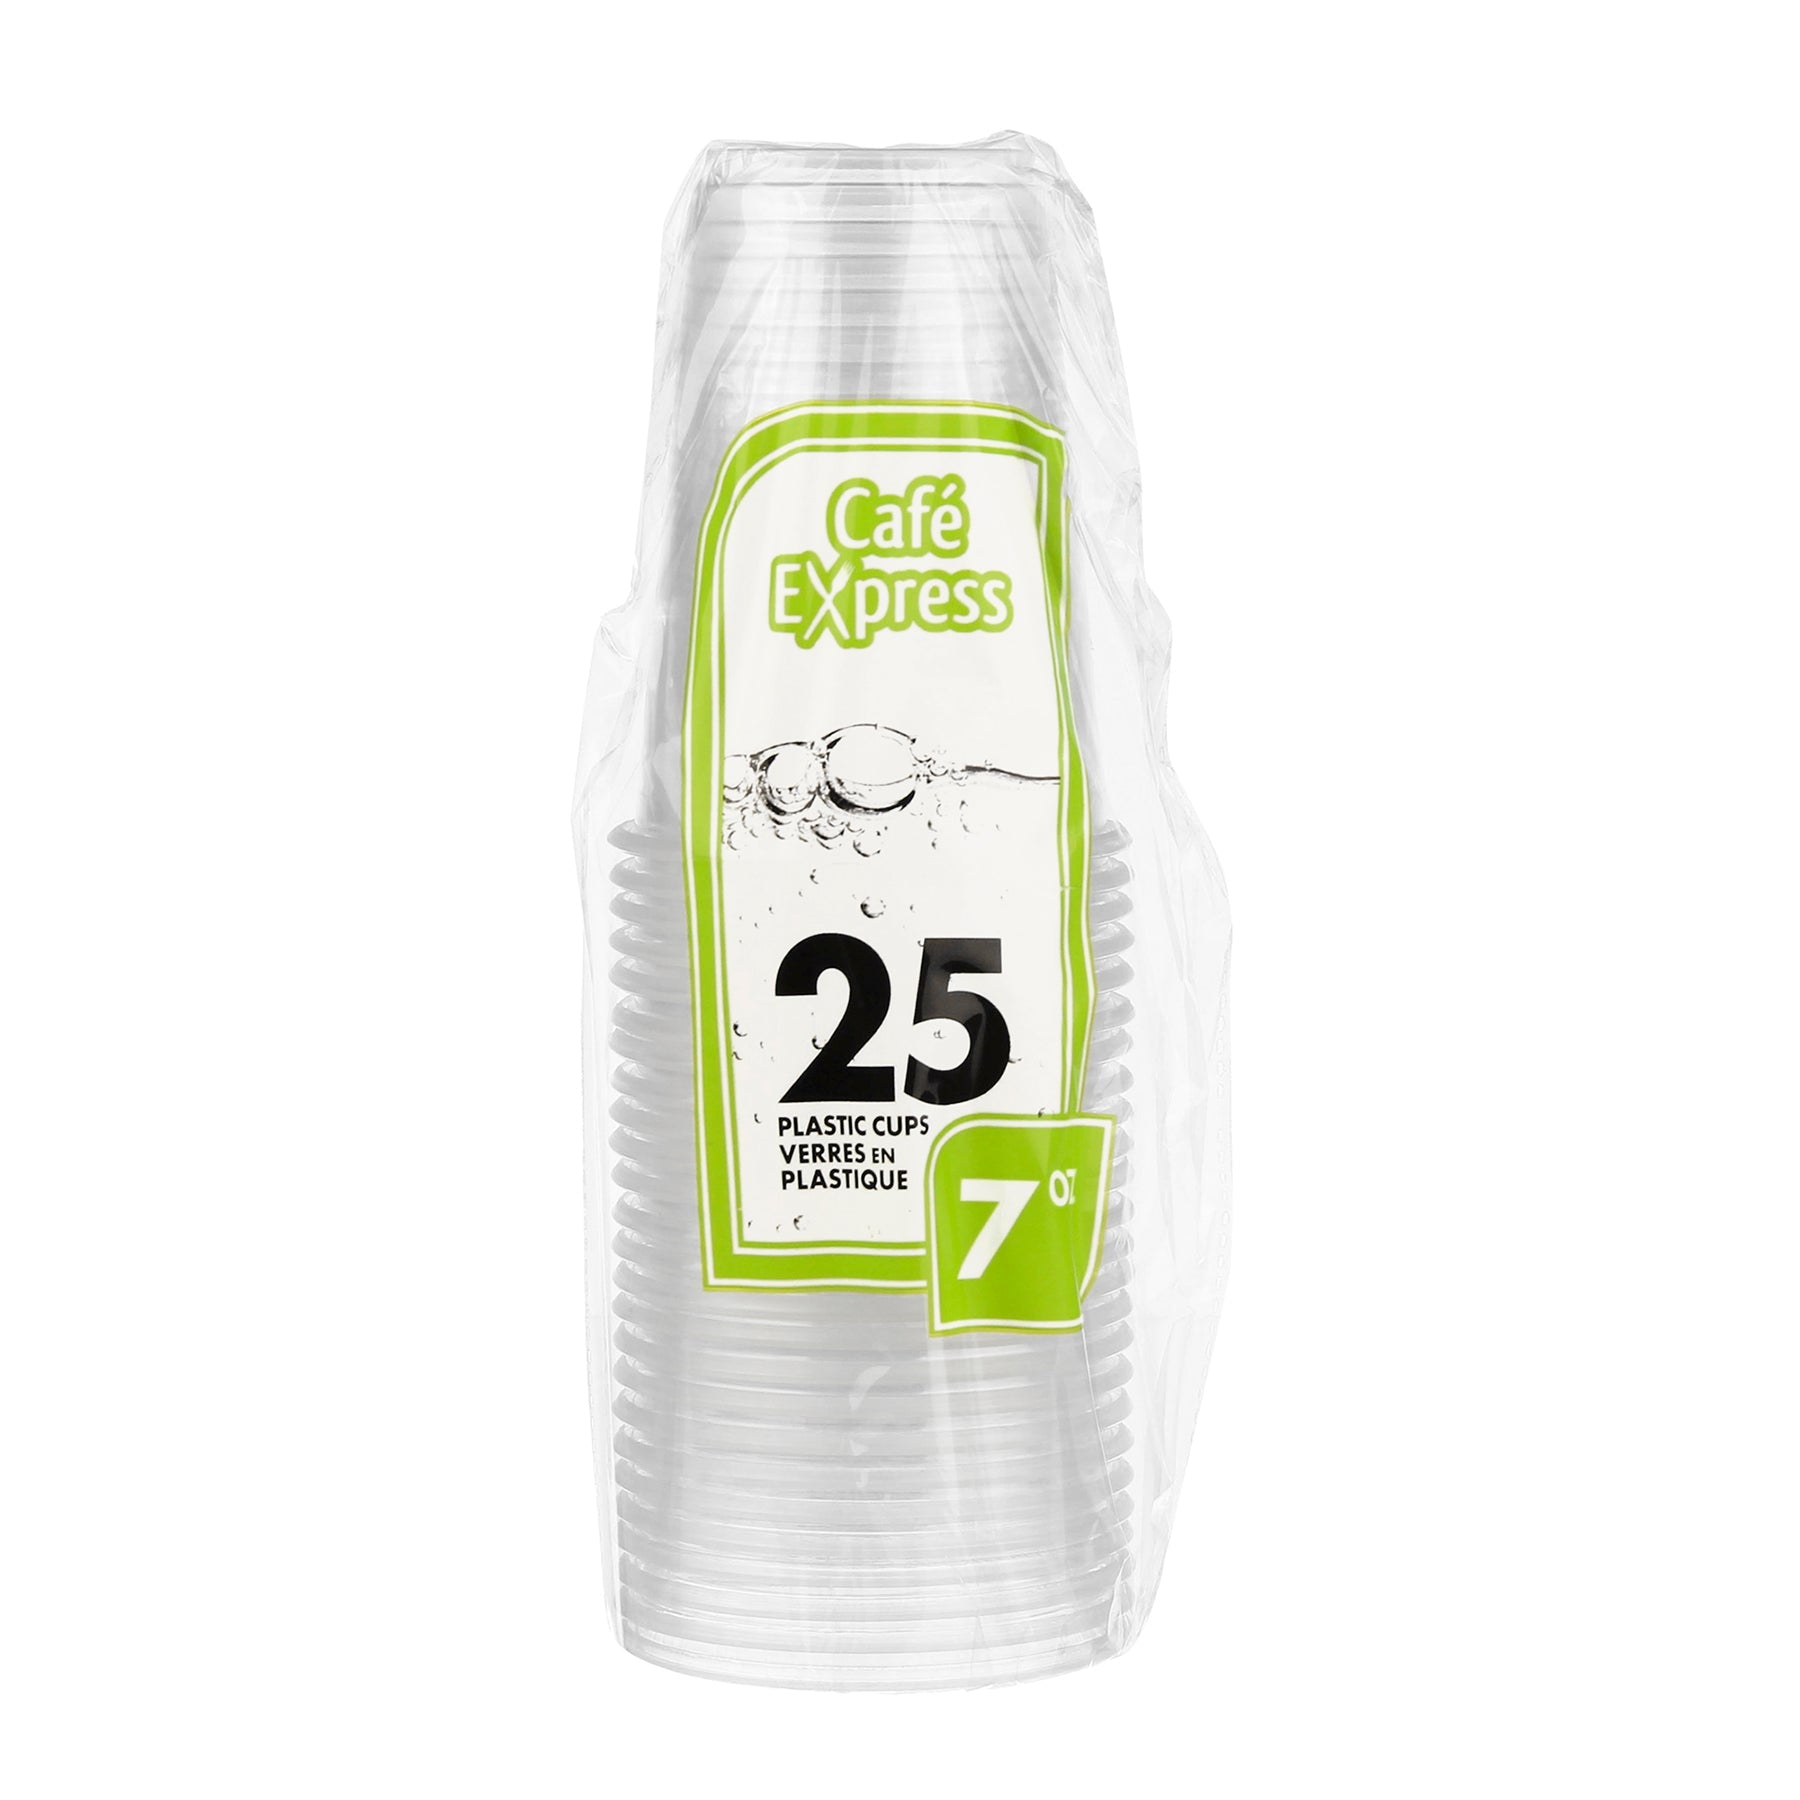 Café Express 25 Cups Clear Plastic 7oz